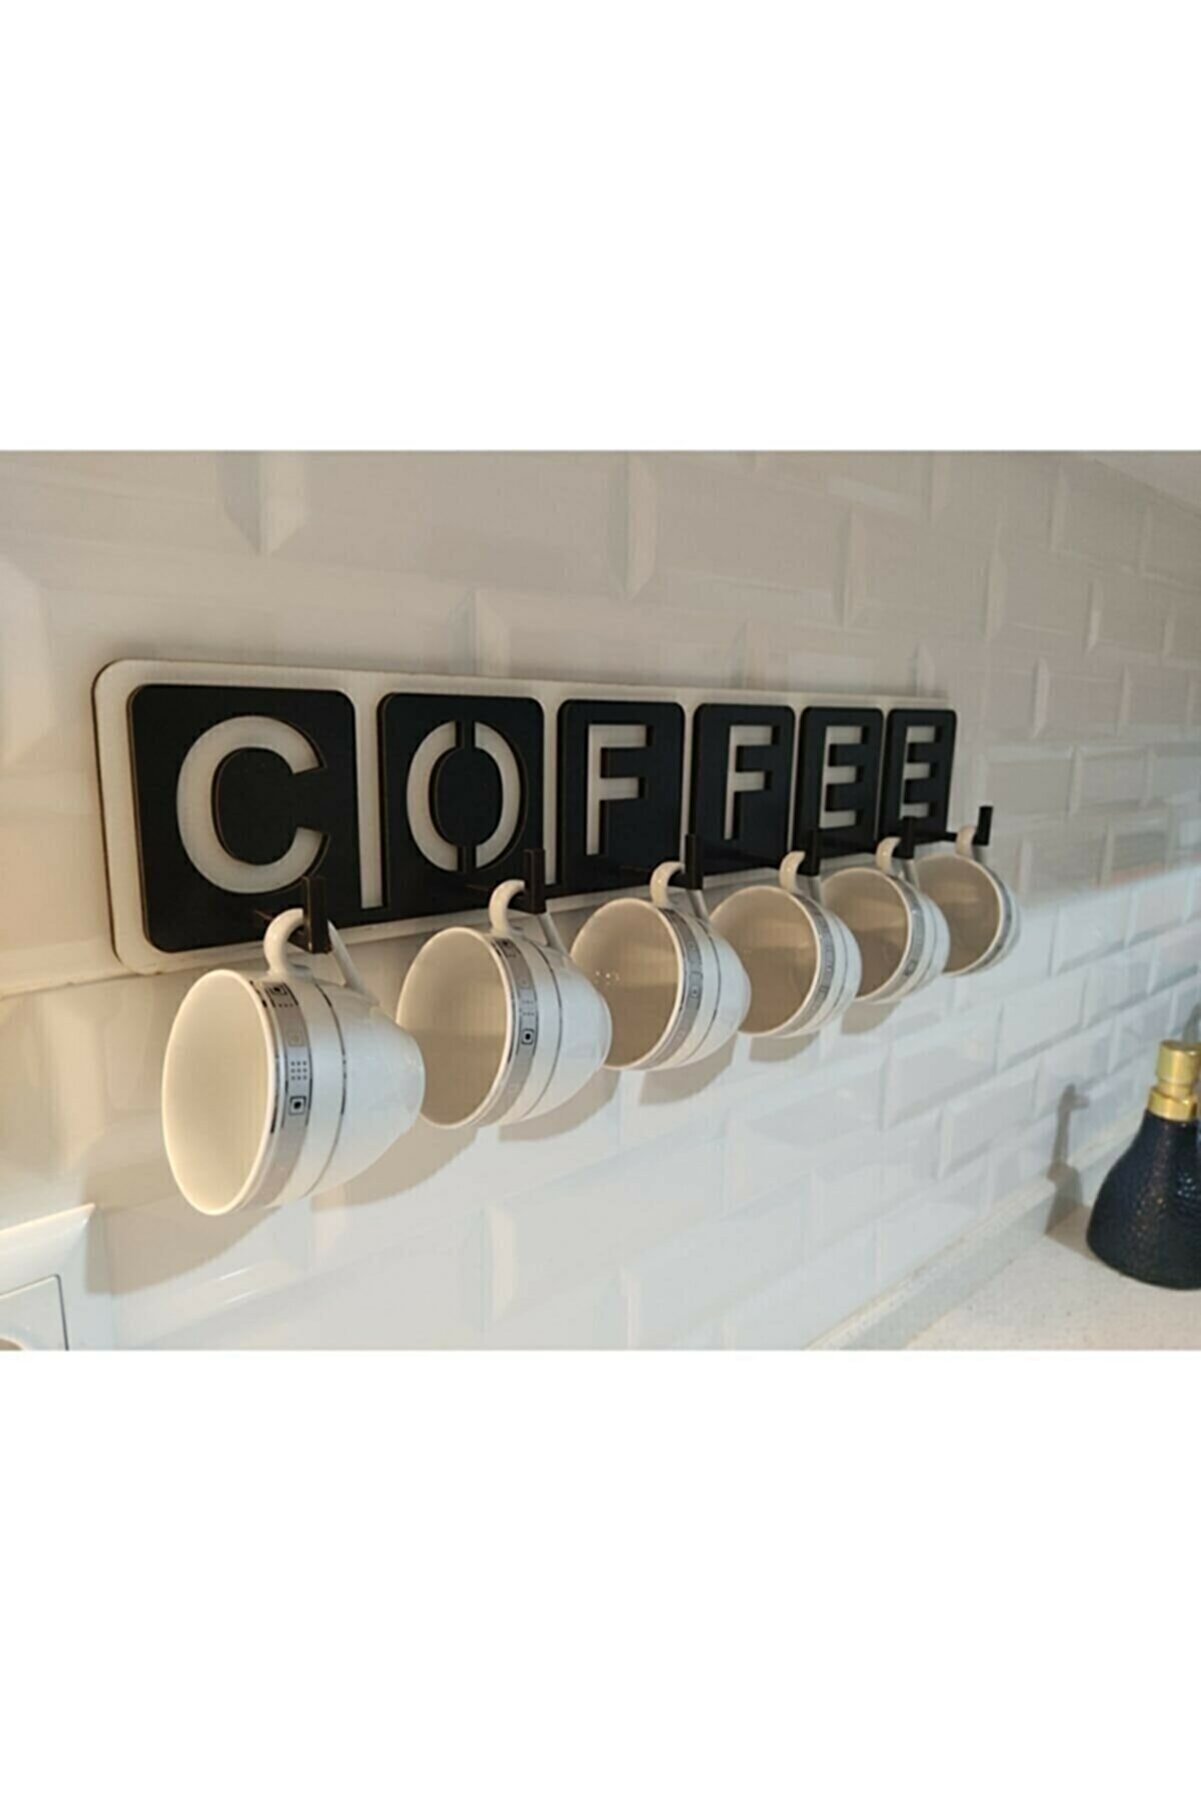 Genel Markalar Dekoratif Coffee Yazılı Mutfak Fincan Ve Kupa Askılığı 45cm X 10cm